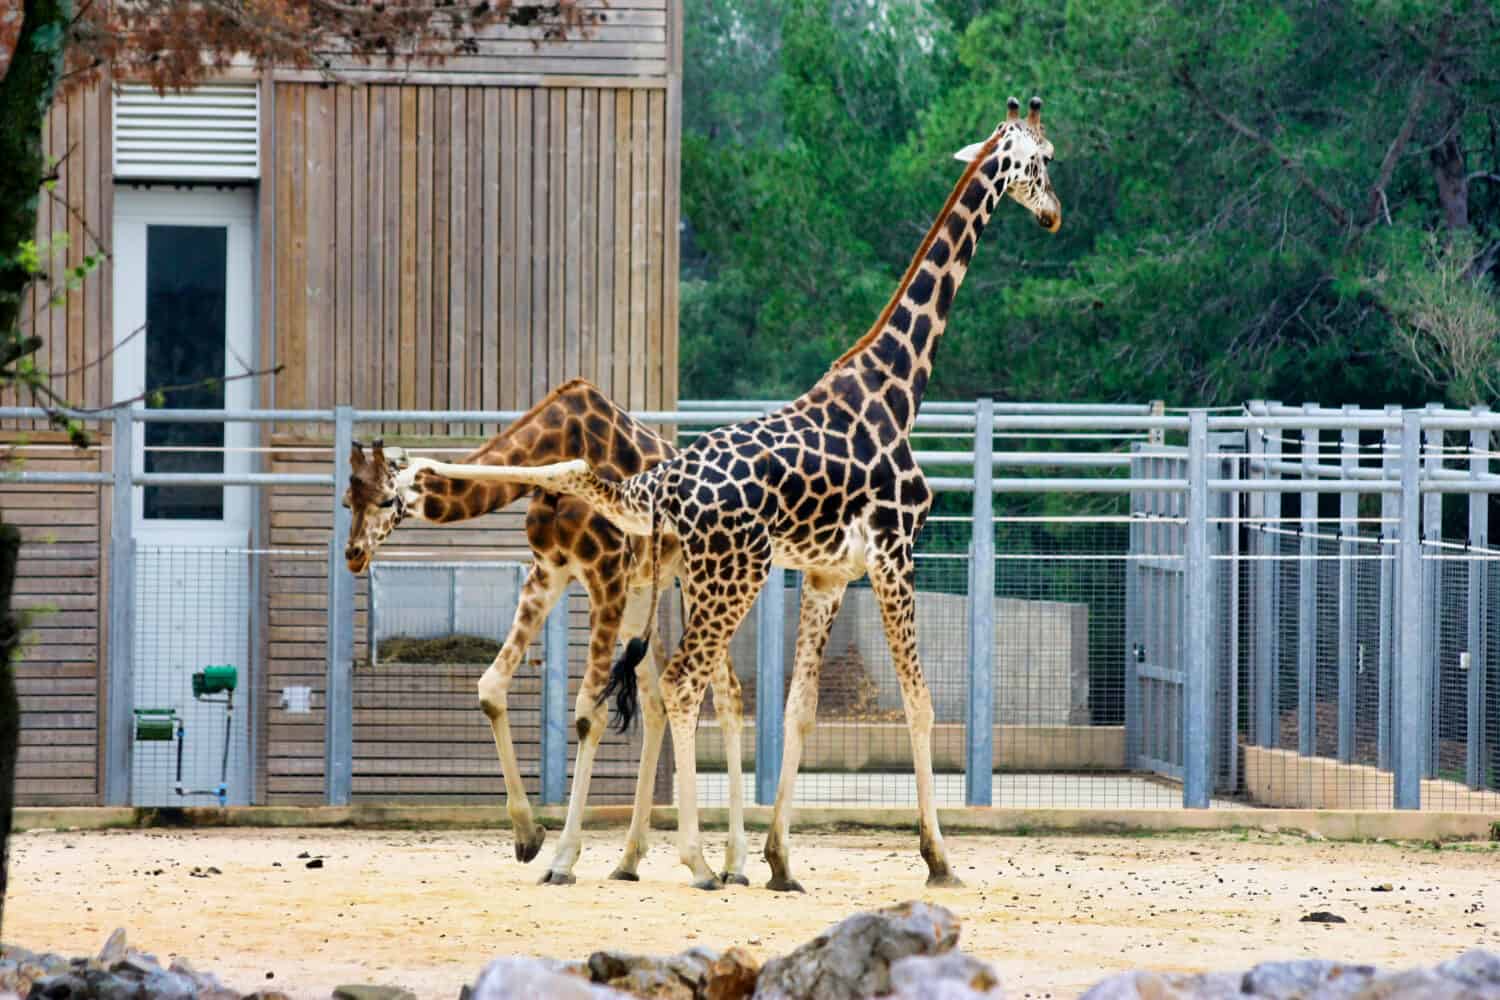 La giraffa maschio prende a calci la giraffa femmina